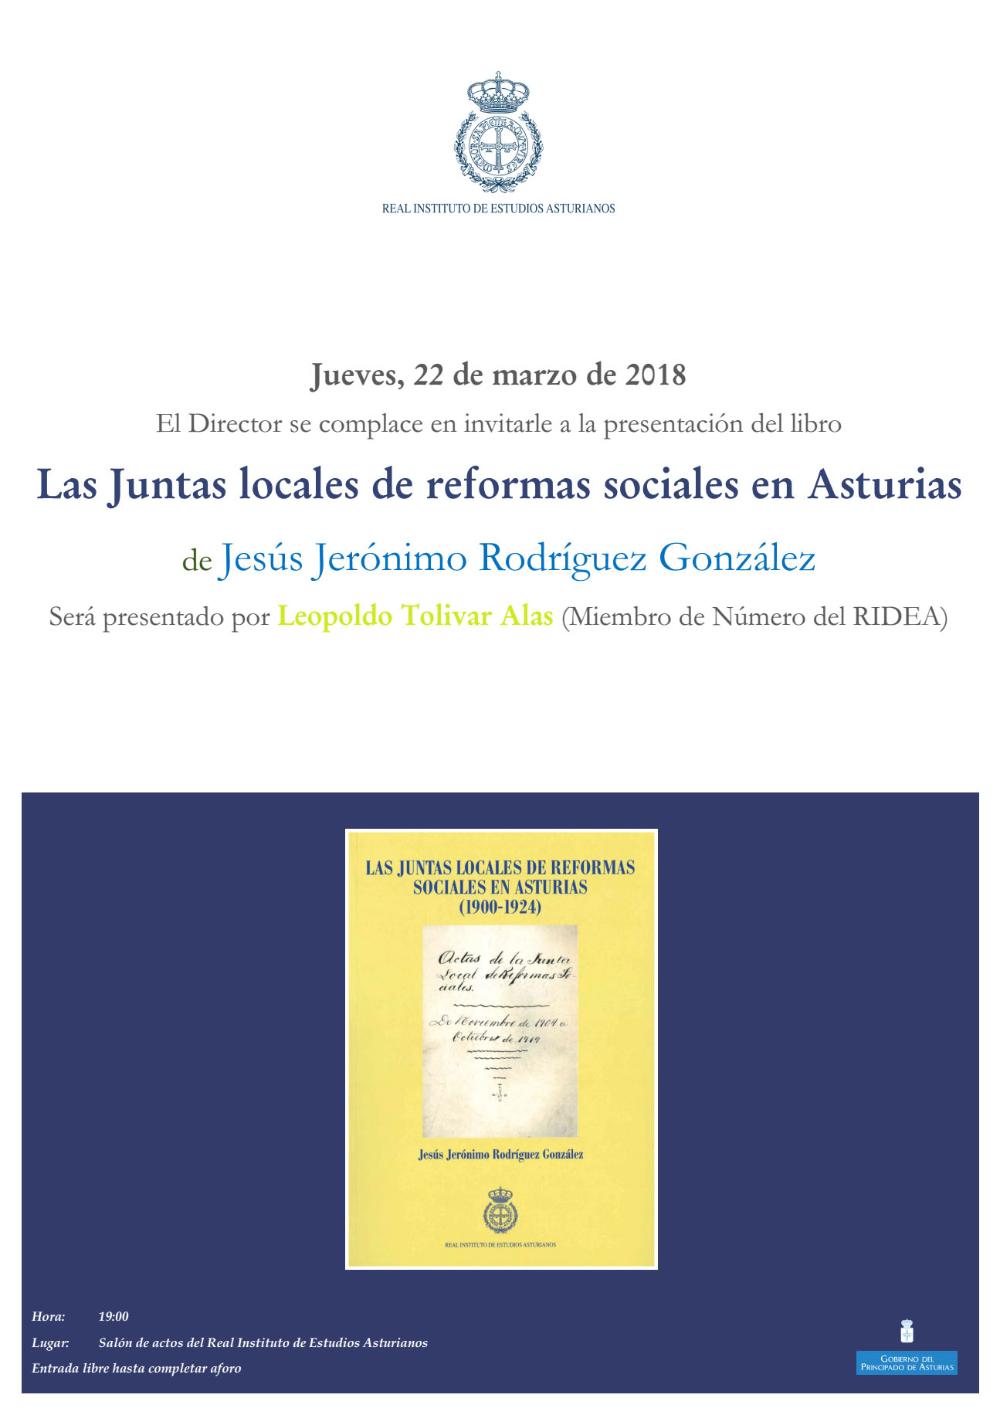 Imagen - Presentación del libro Las Juntas locales de reformas sociales en Asturias